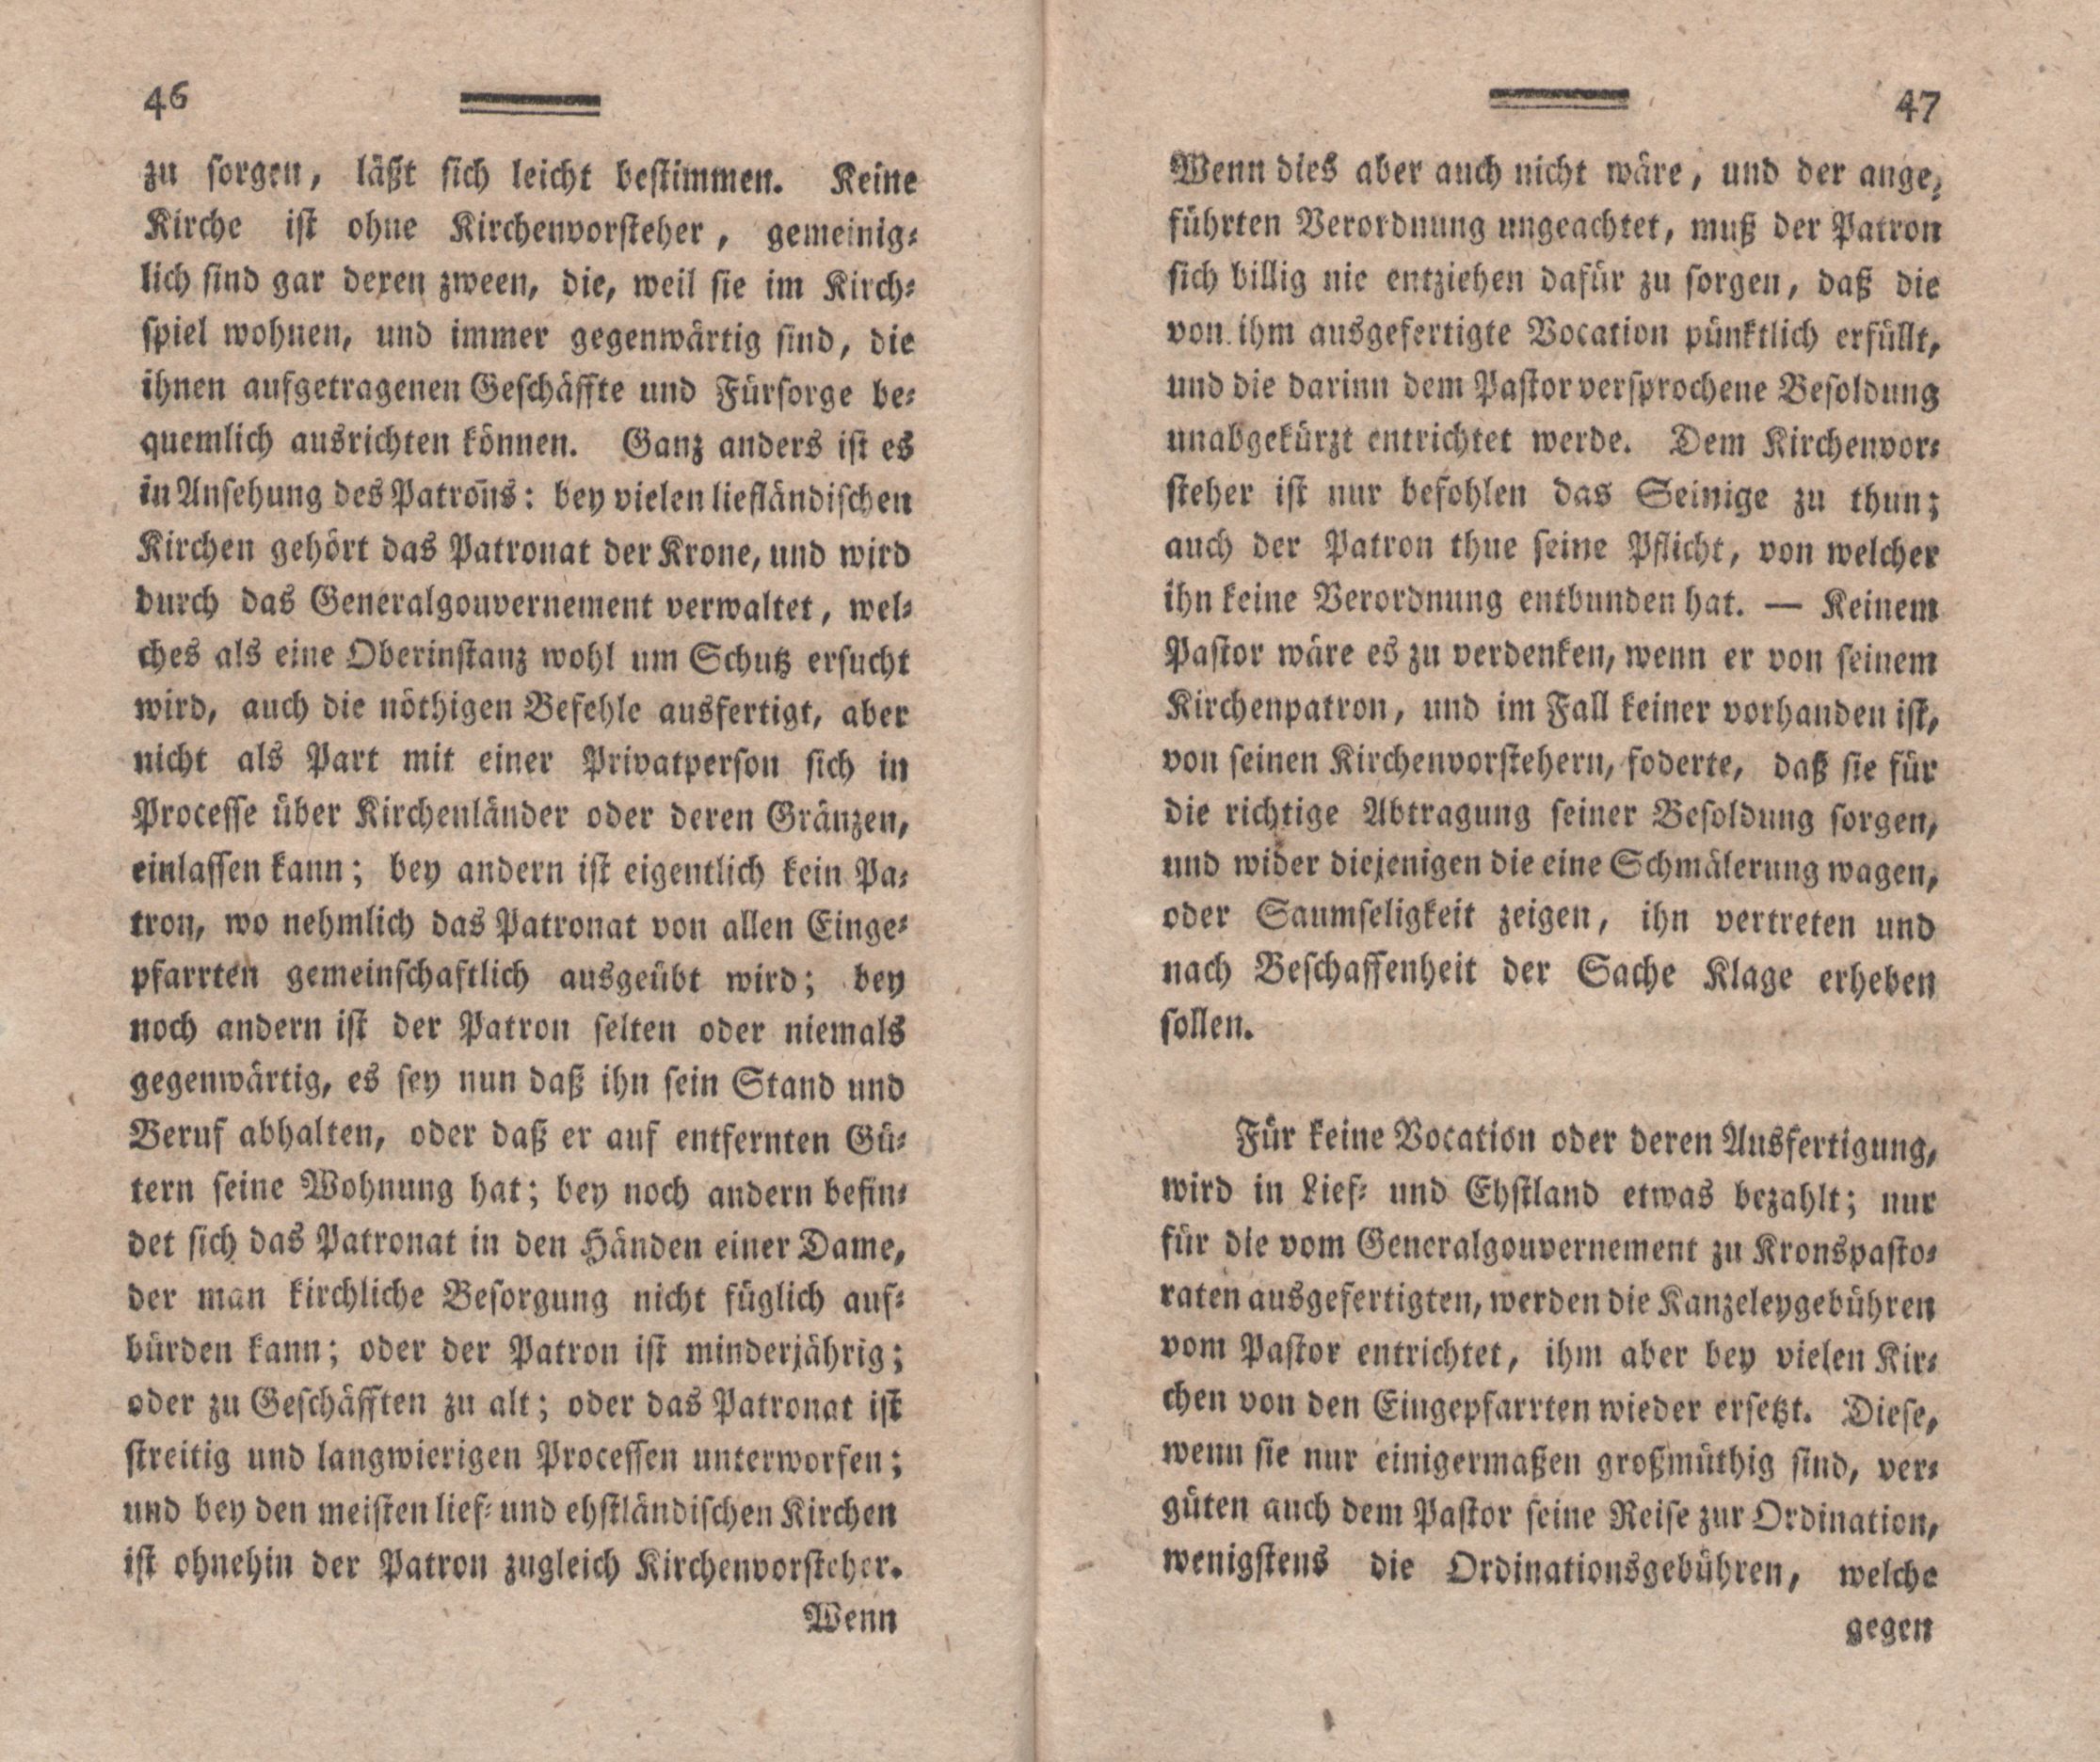 Nordische Miscellaneen [02] (1781) | 24. (46-47) Main body of text